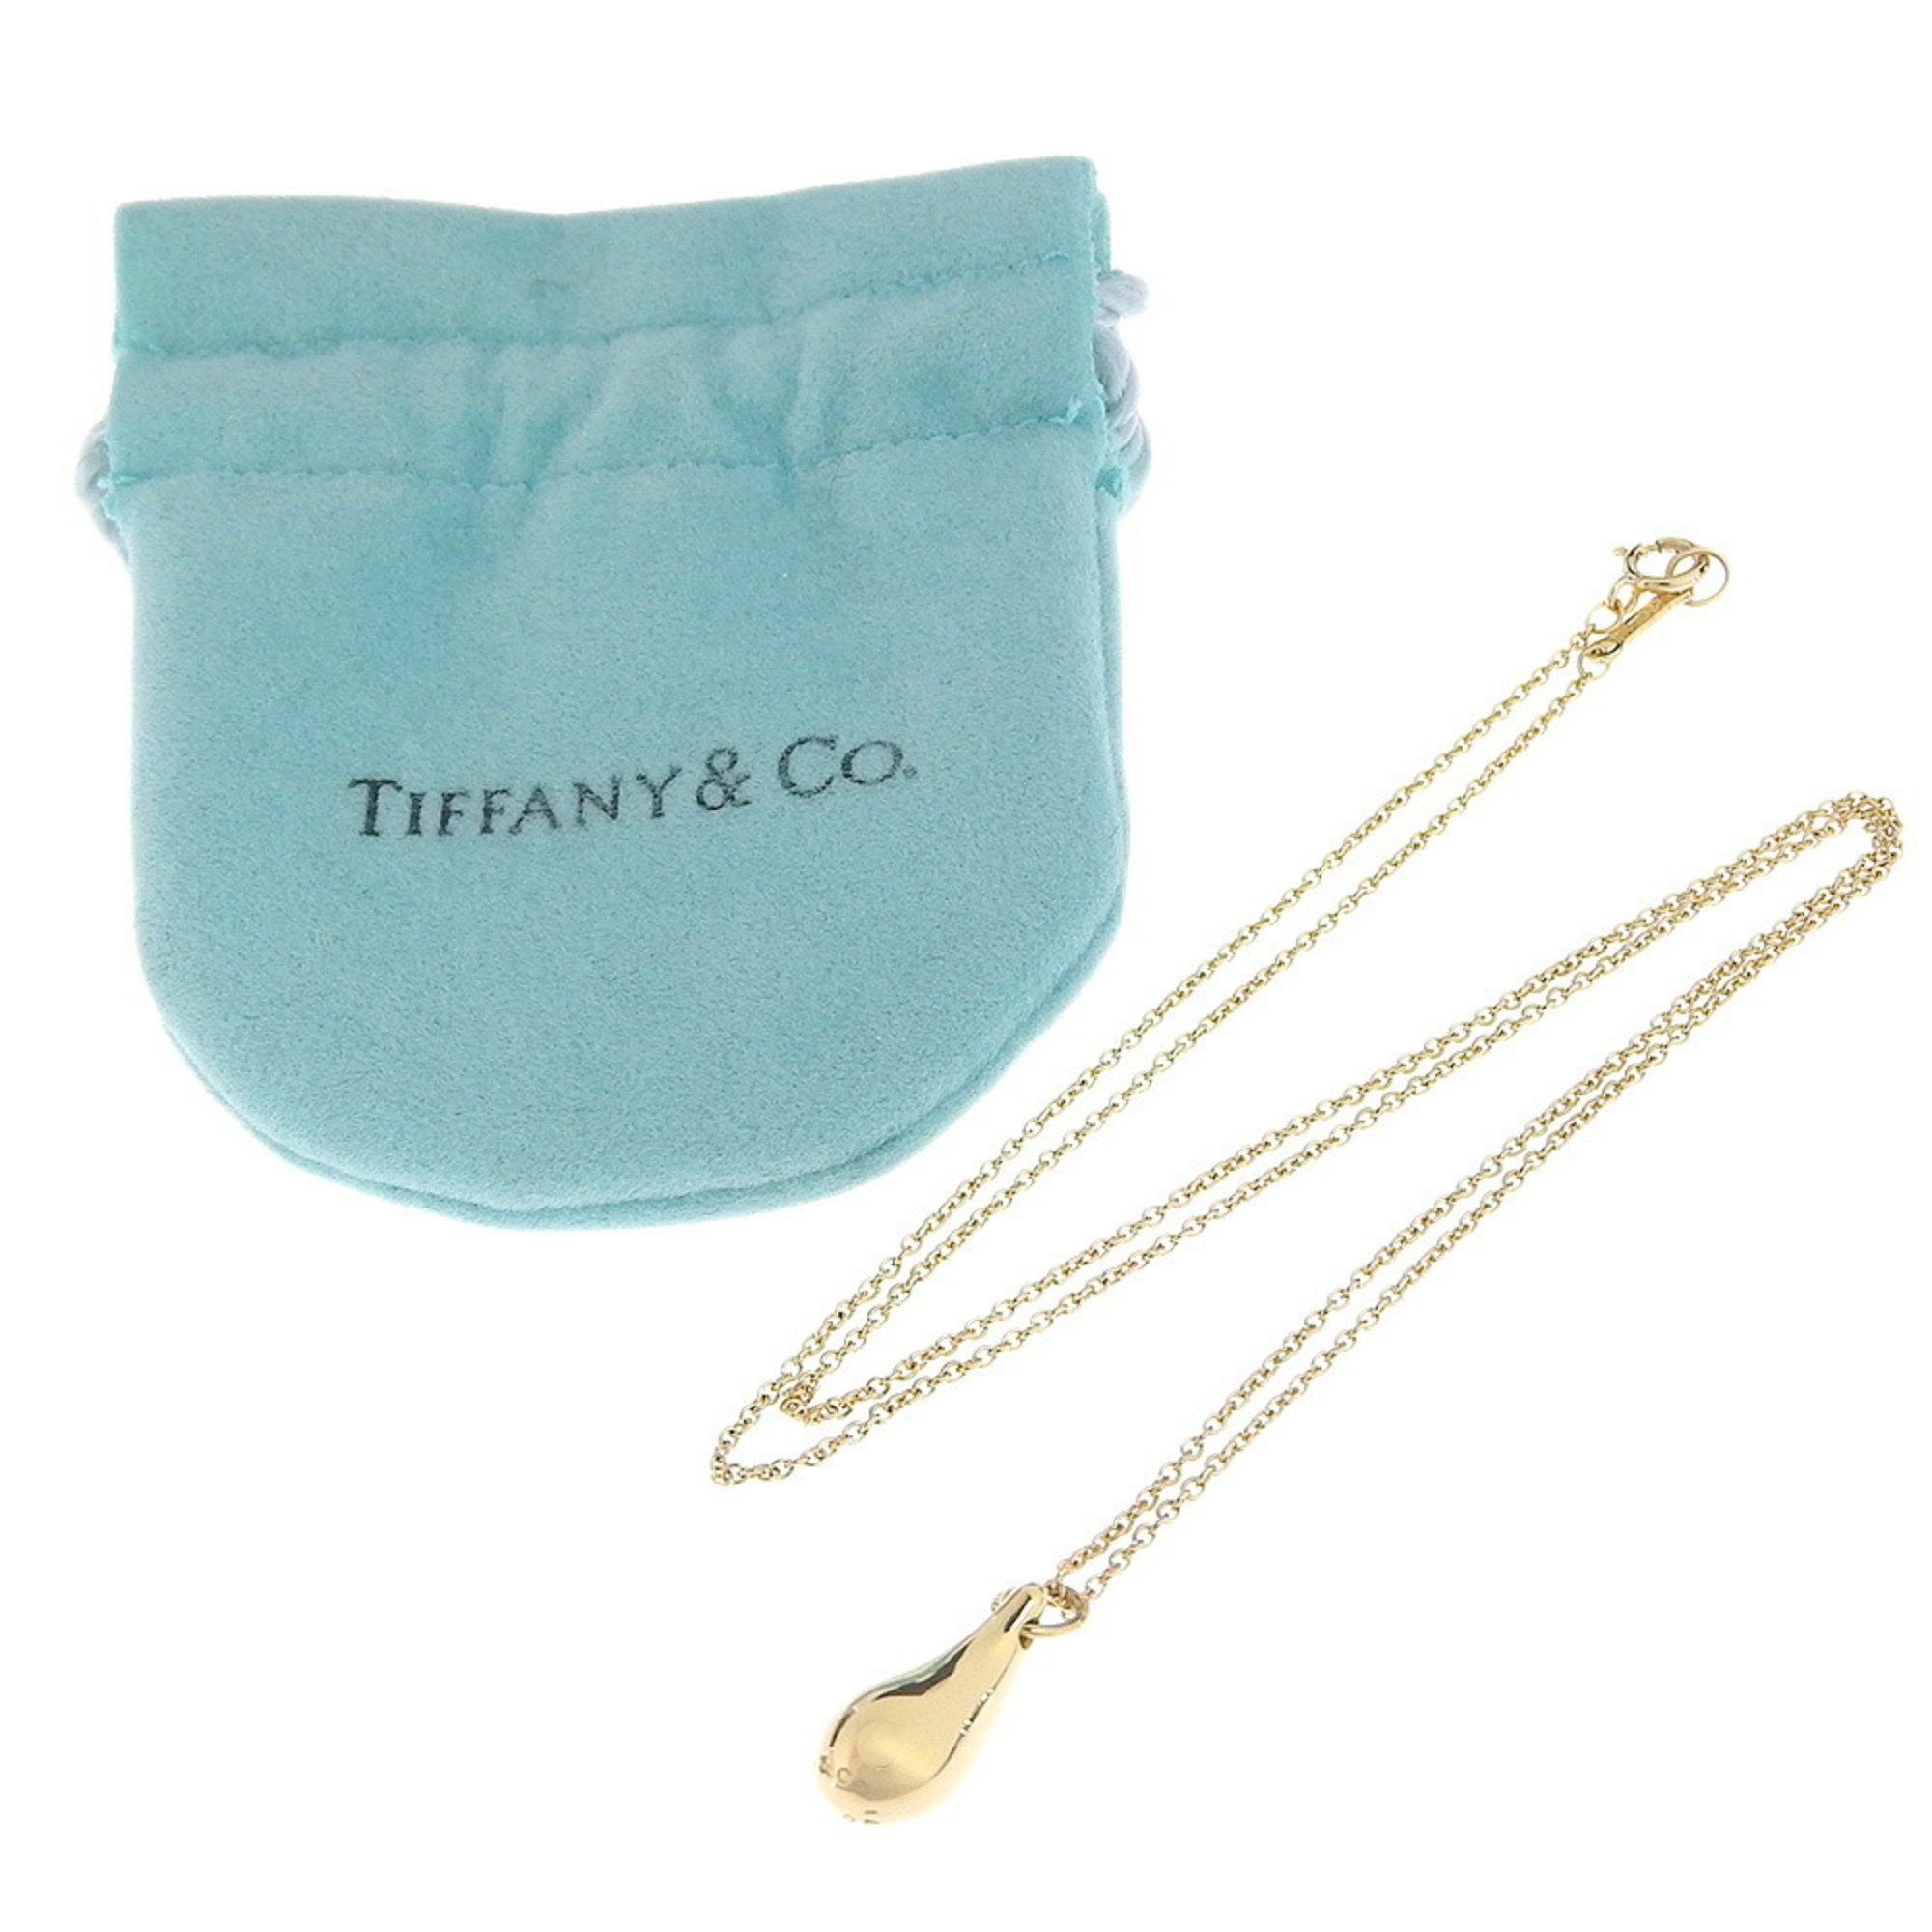 Tiffany & Co. Elsa Peretti teardrop necklace, 18K yellow gold, approx. 4.5g, teardrop, for women